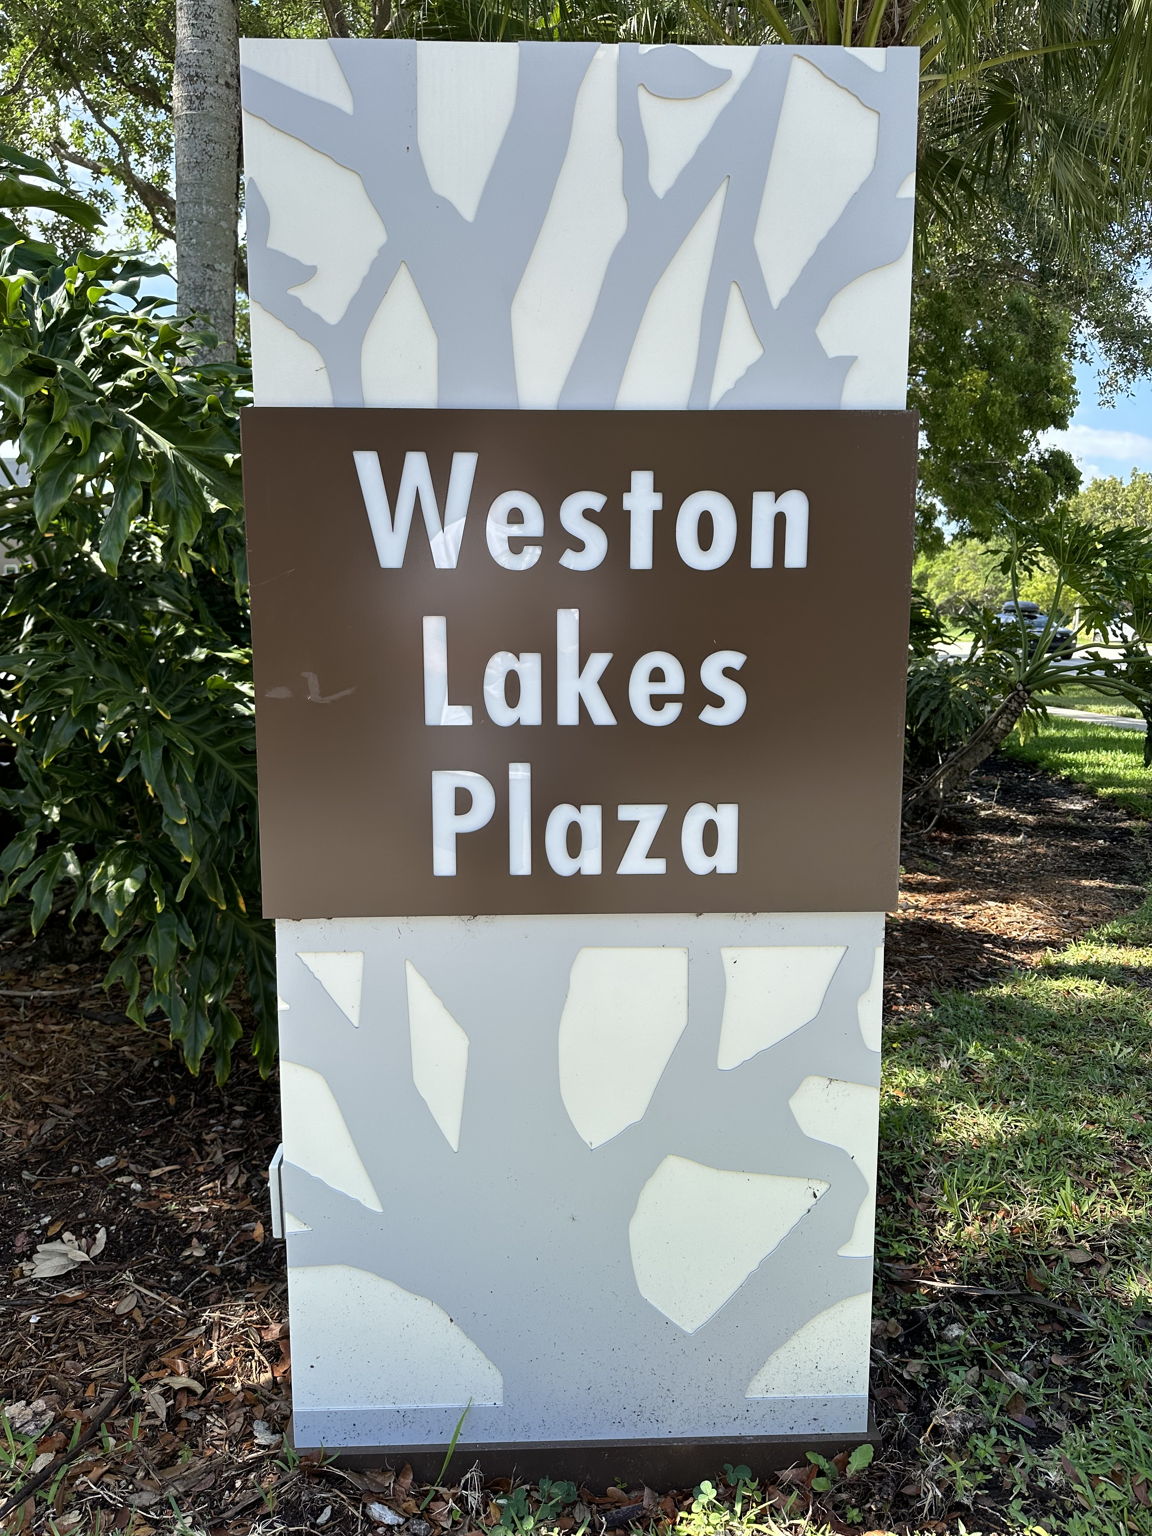 Walk to Weston Lakes Plaza